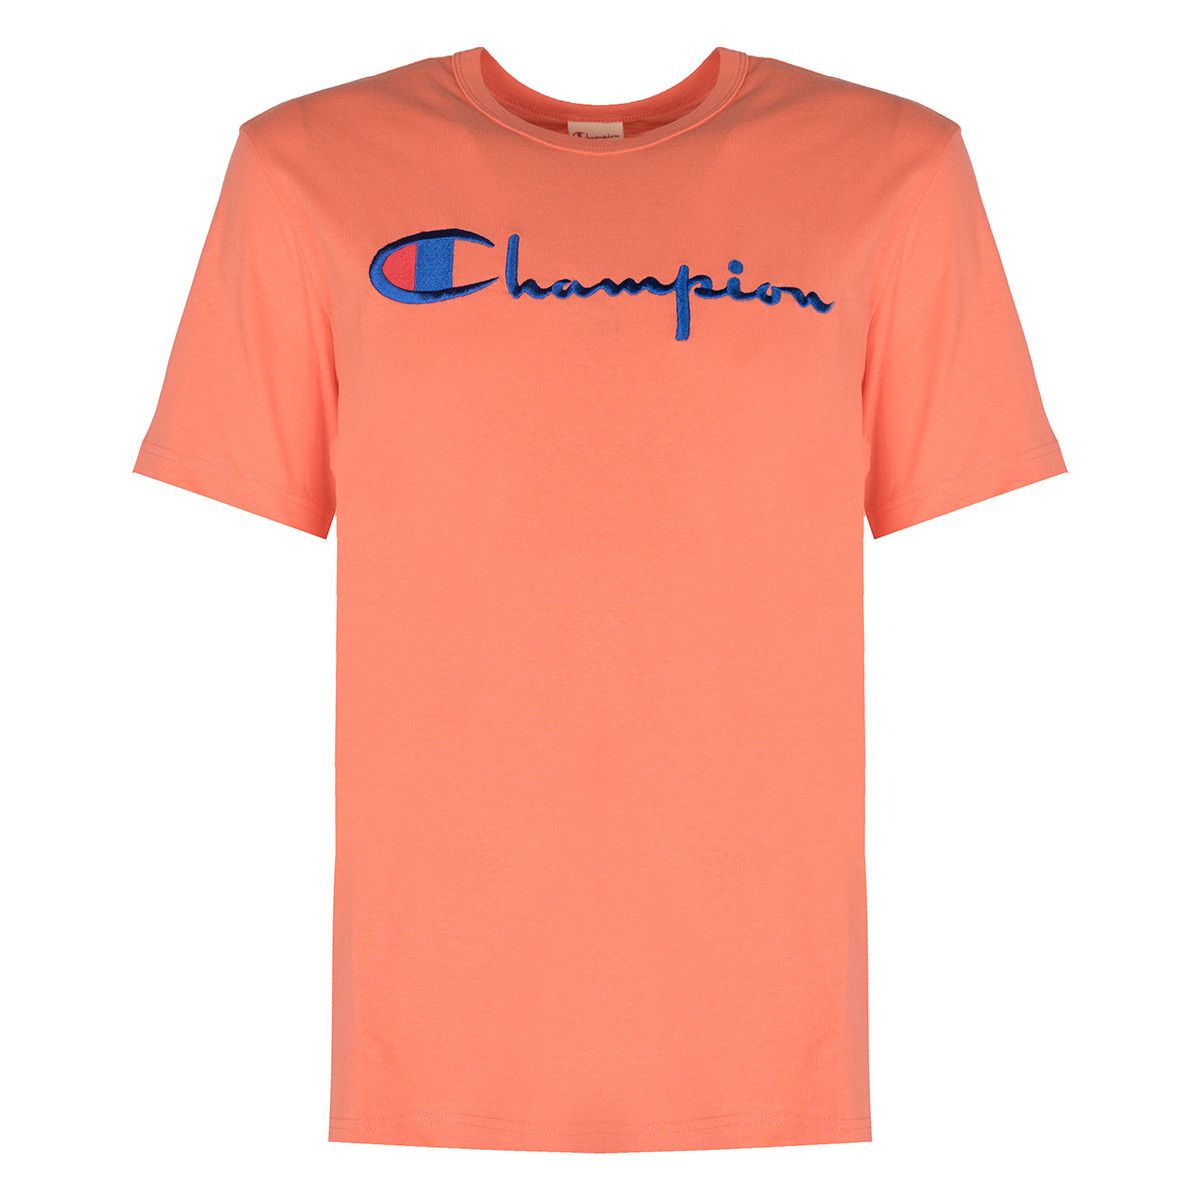 Υφασμάτινα Άνδρας T-shirt με κοντά μανίκια Champion 210972 Ροζ